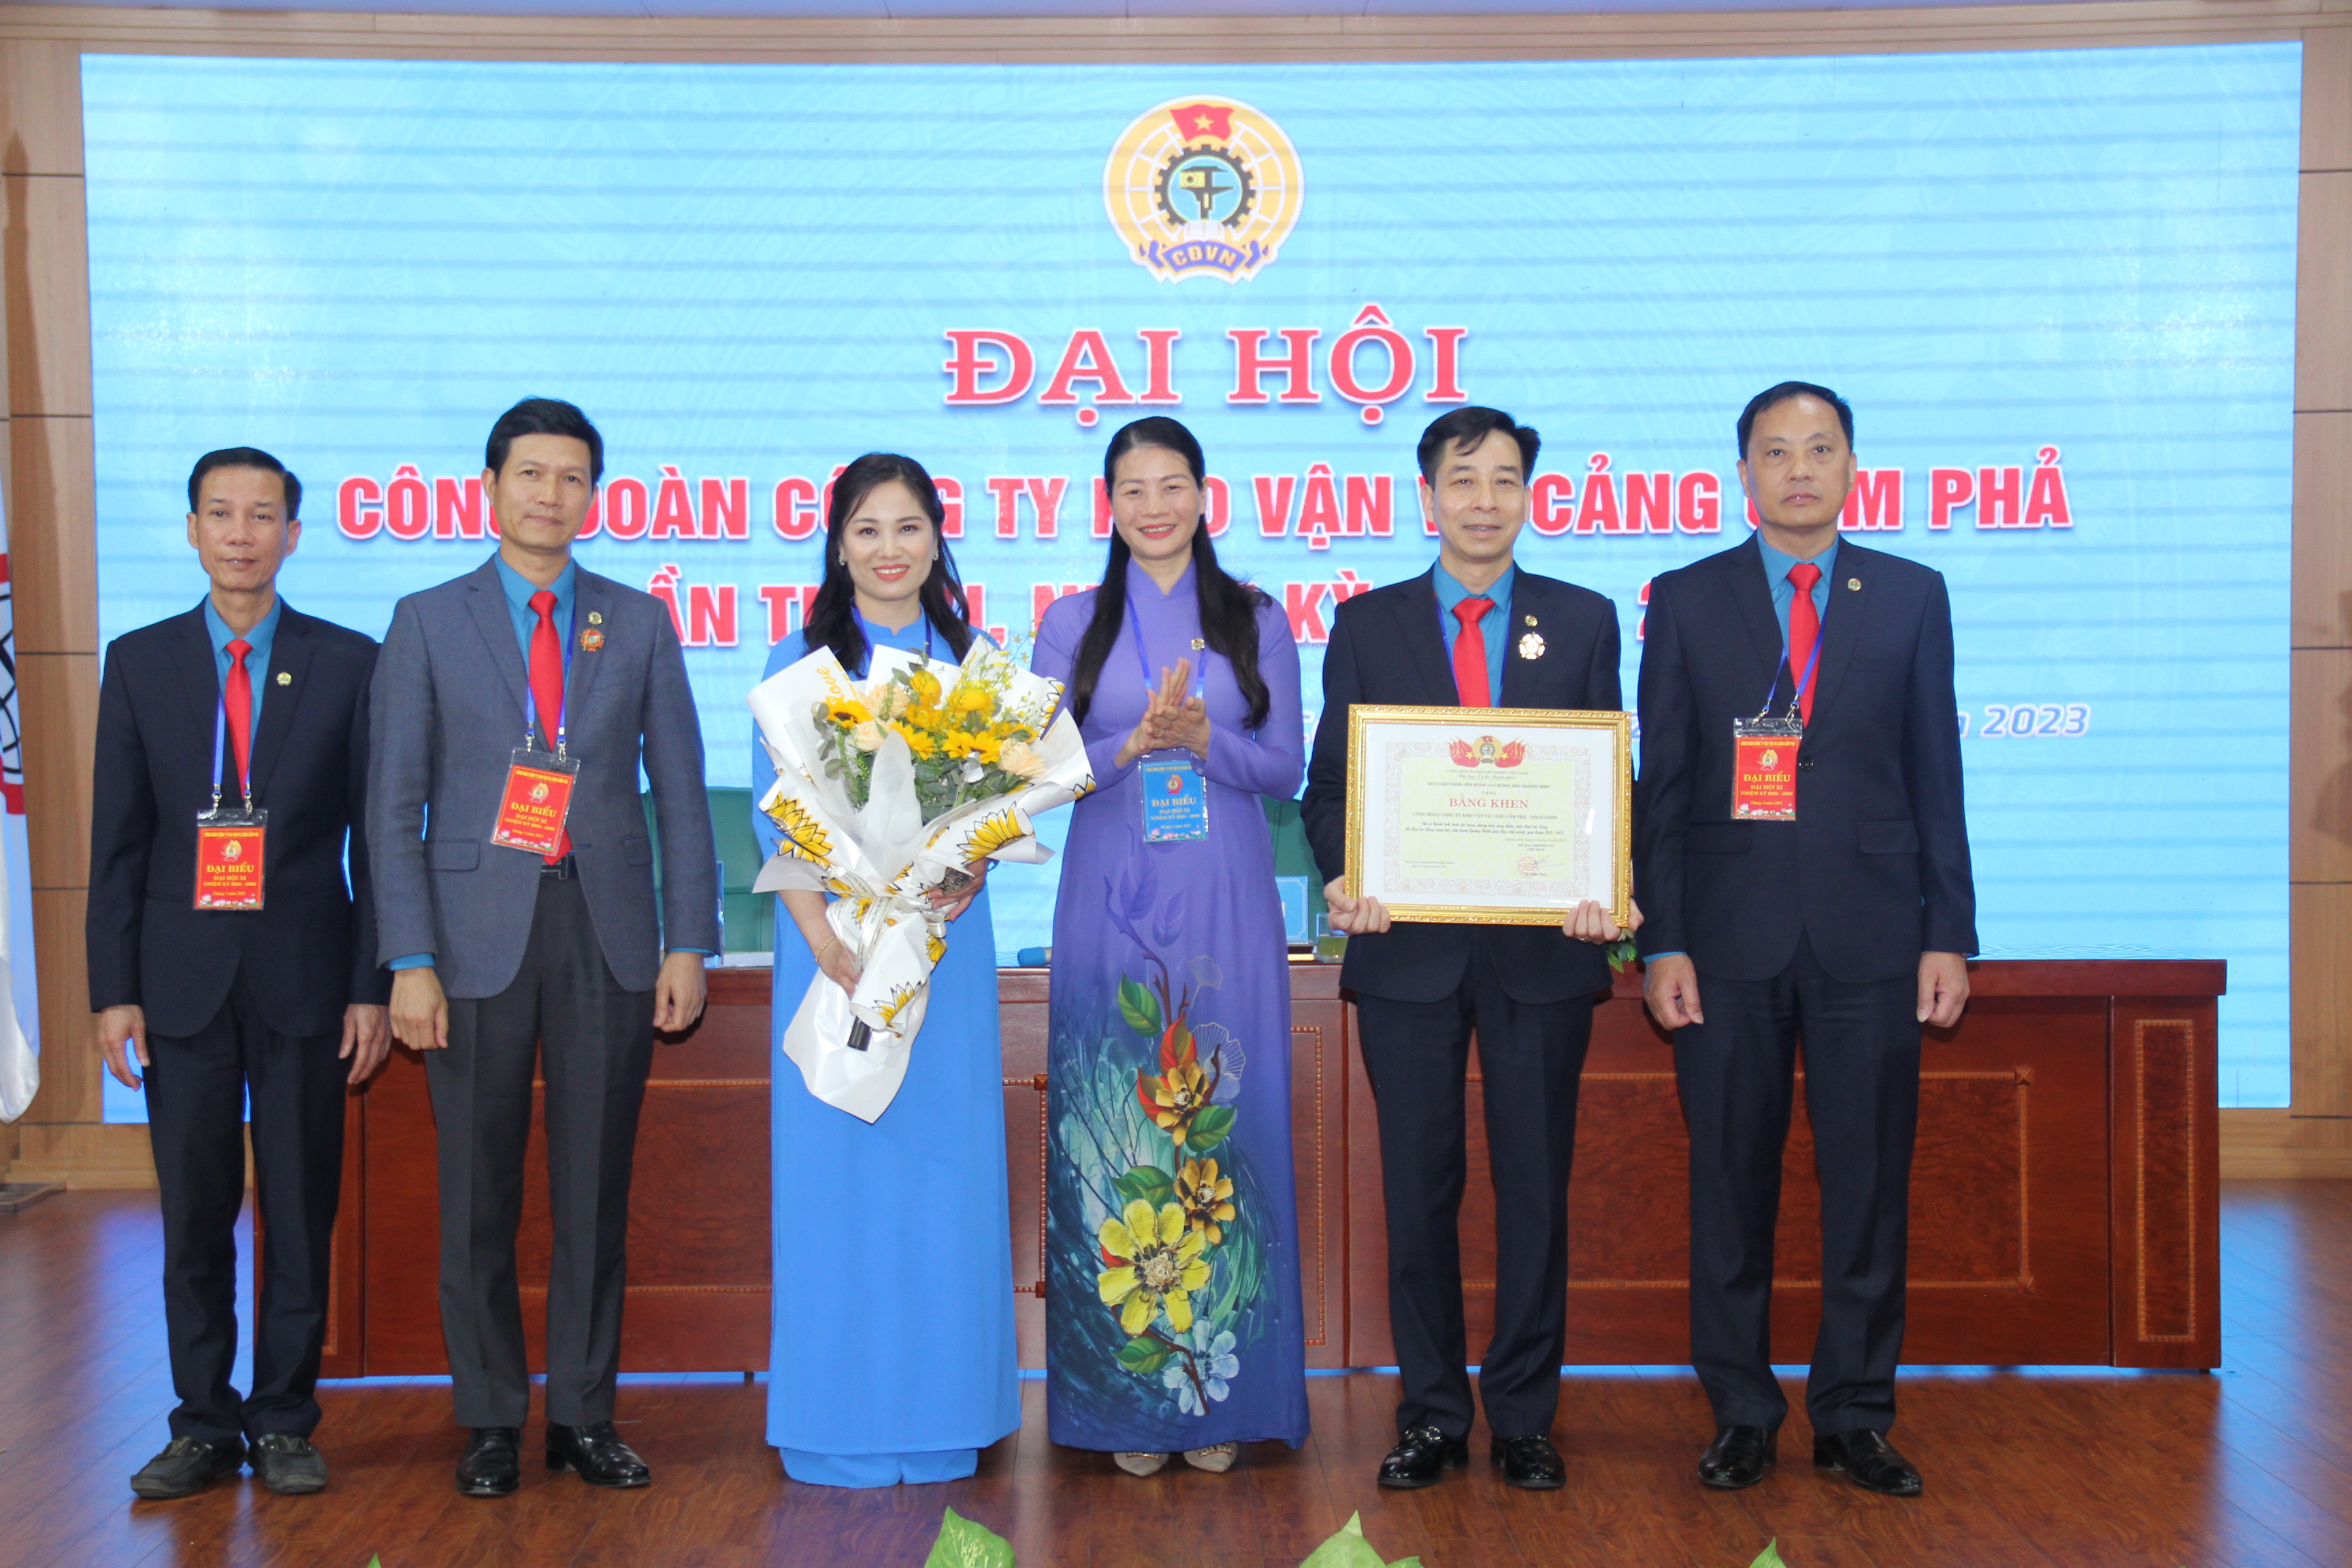 Công đoàn Công ty Kho vận và cảng Cẩm Phả đón nhận Huân chương Lao động hạng Ba